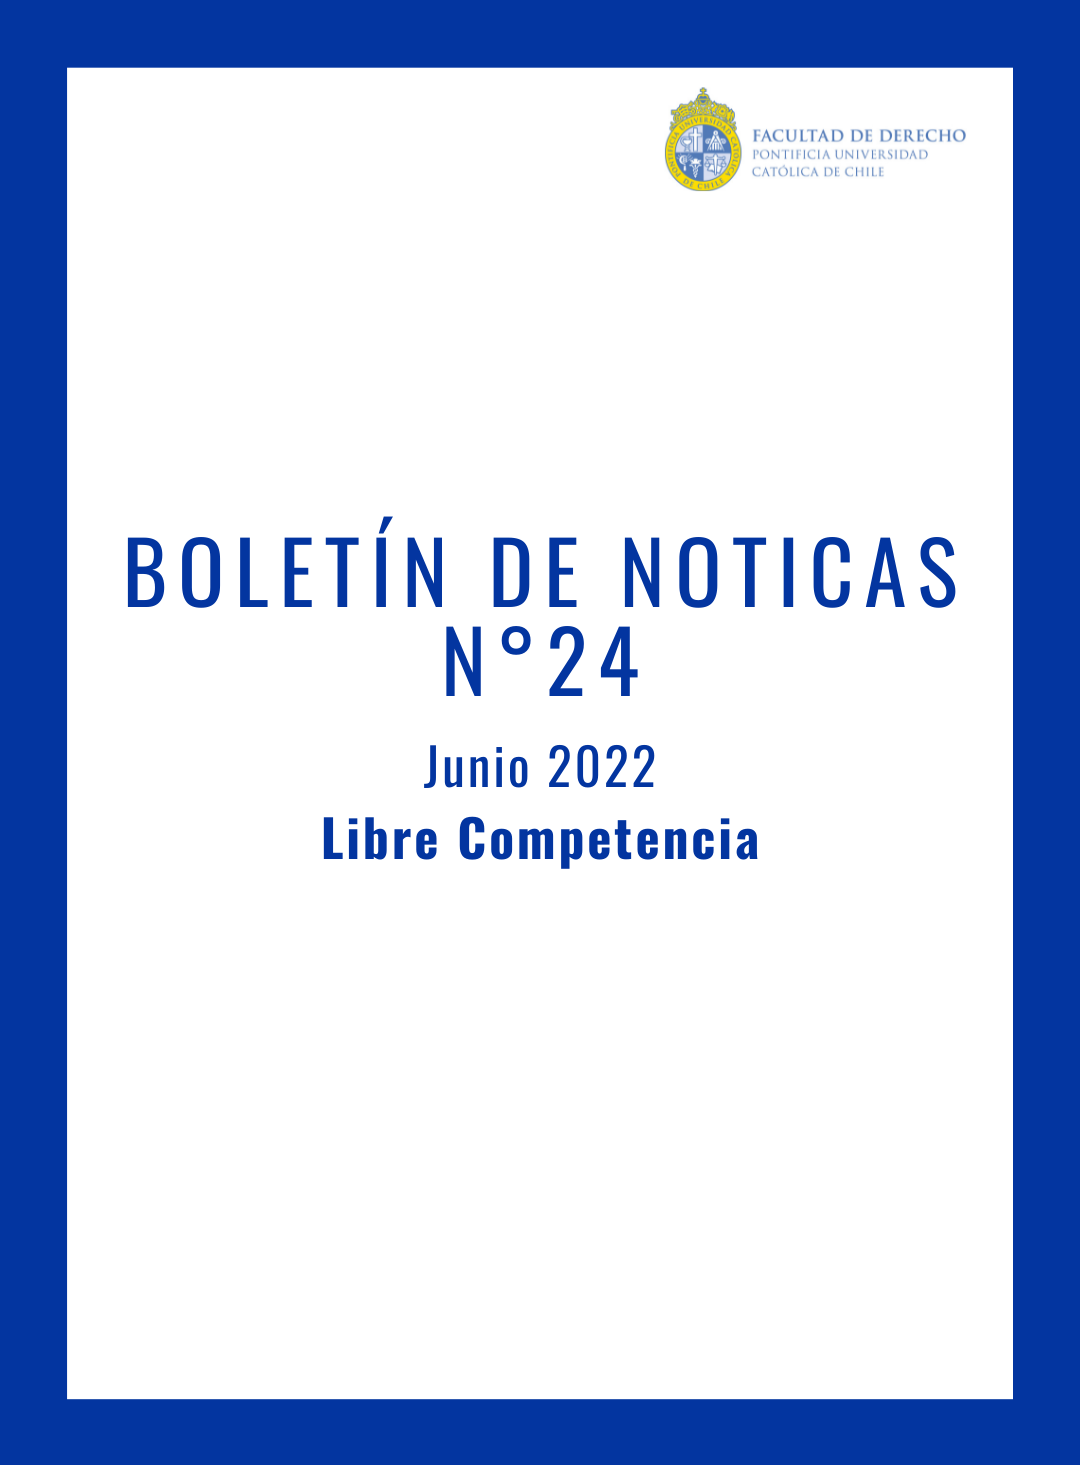 BOLETÍN DE NOTICIAS N°24 JUNIO/2022